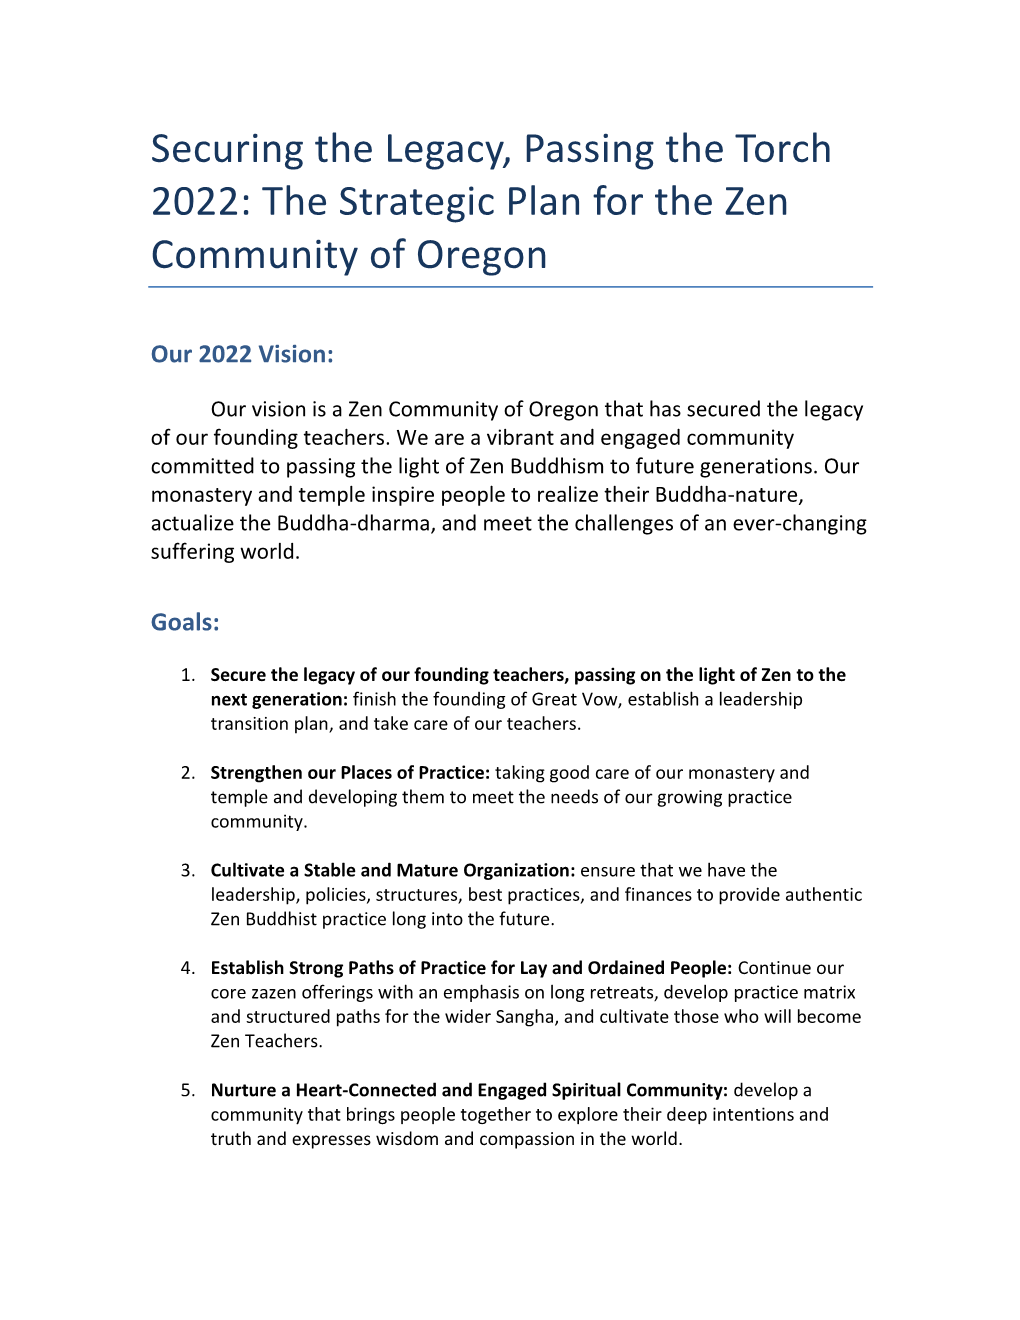 ZCO 2022 Strategic Plan